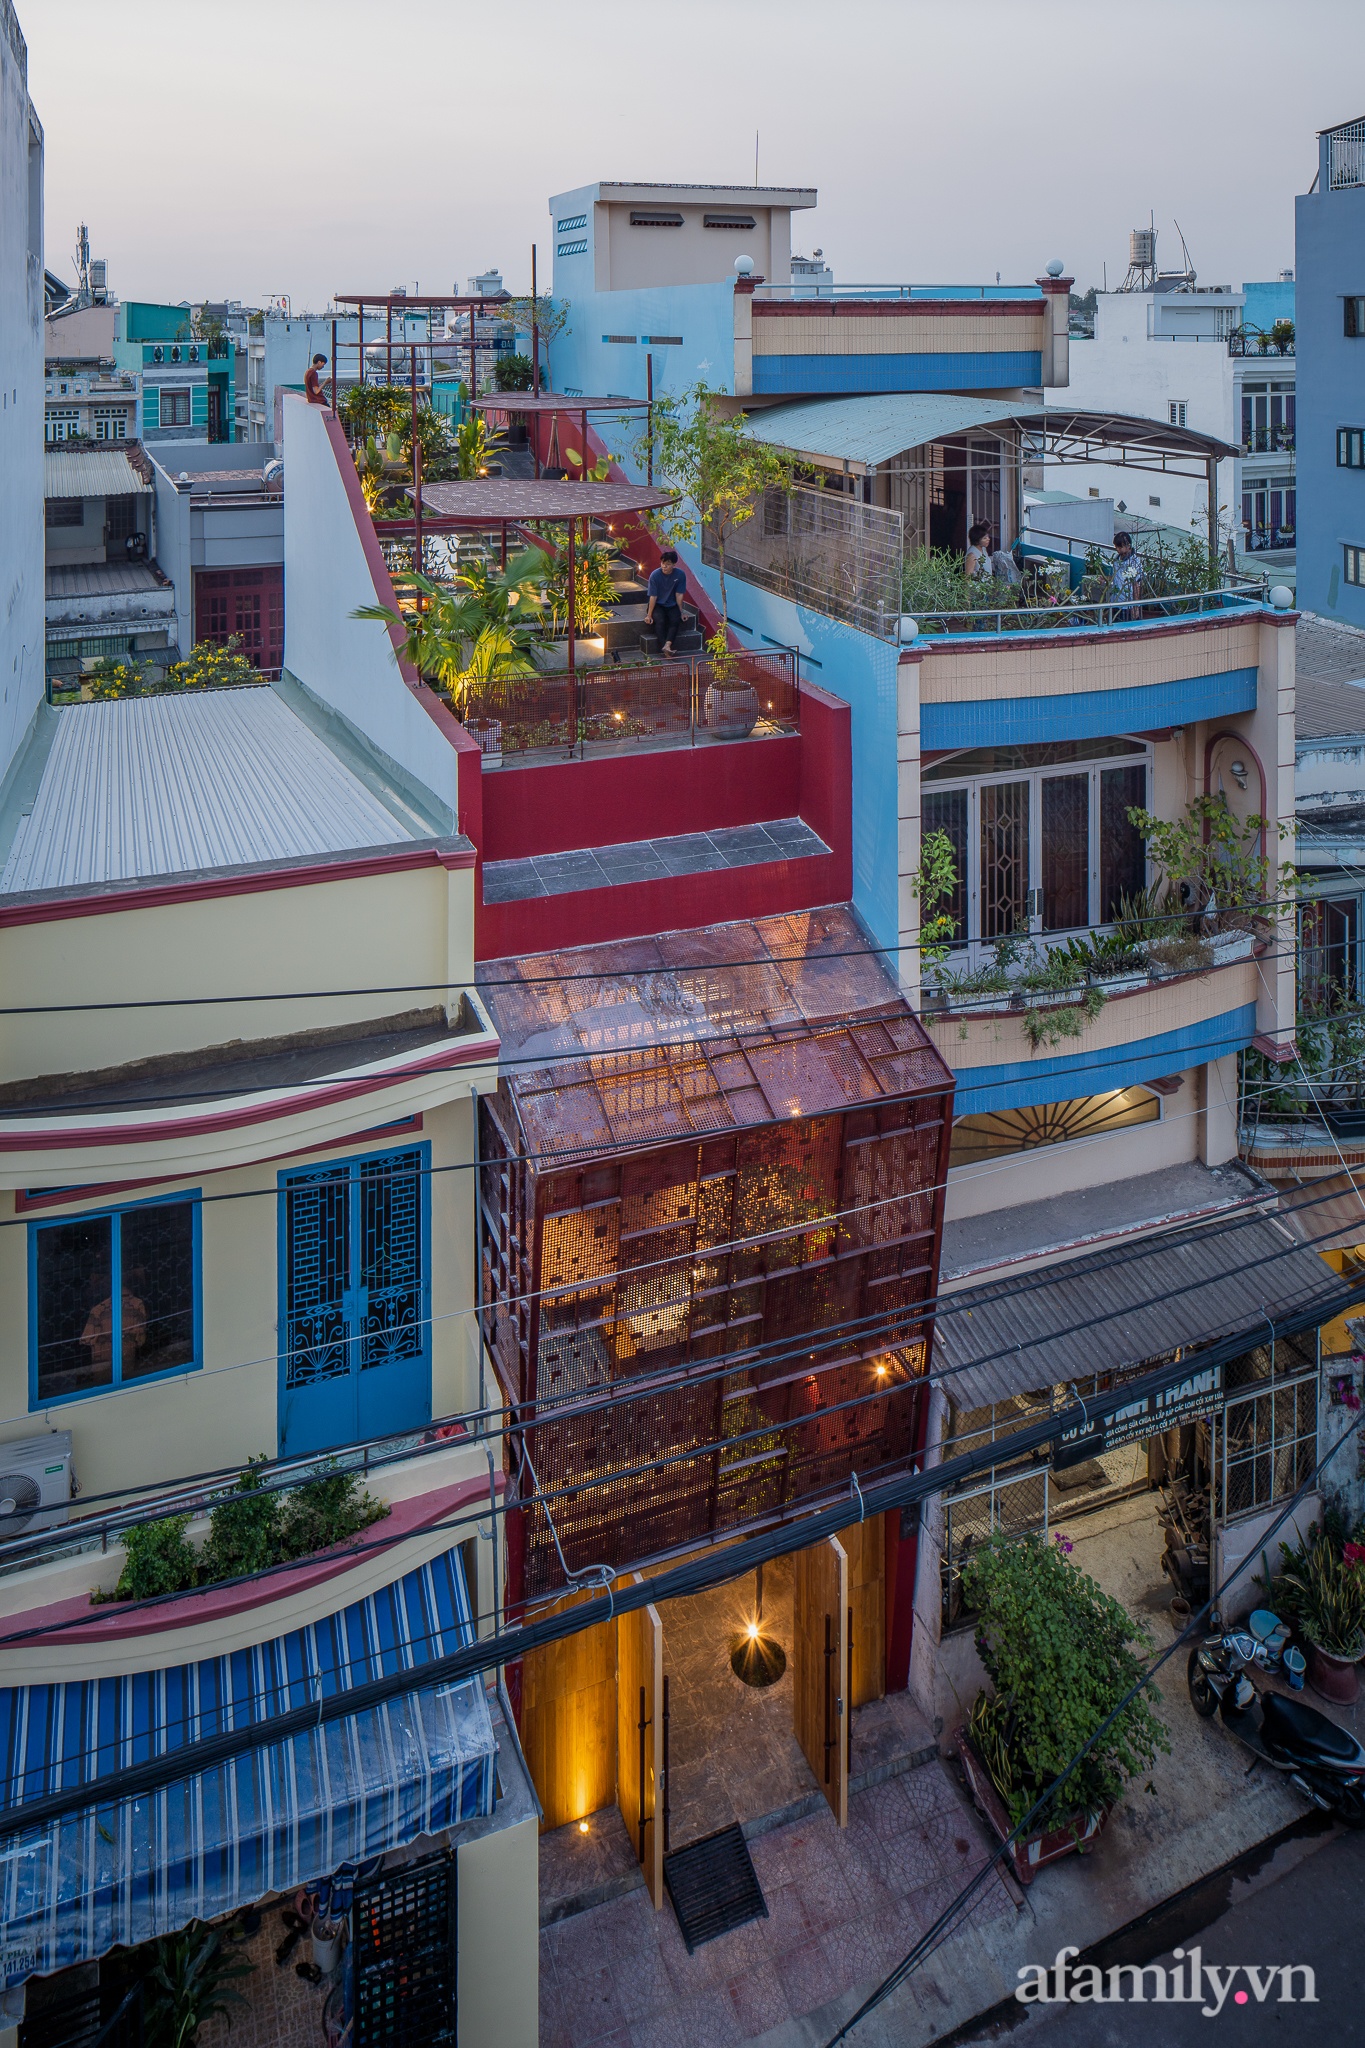 Căn nhà có vườn rau trên mái dốc độc lạ của con gái dành tặng mẹ ở Sài Gòn - Ảnh 3.